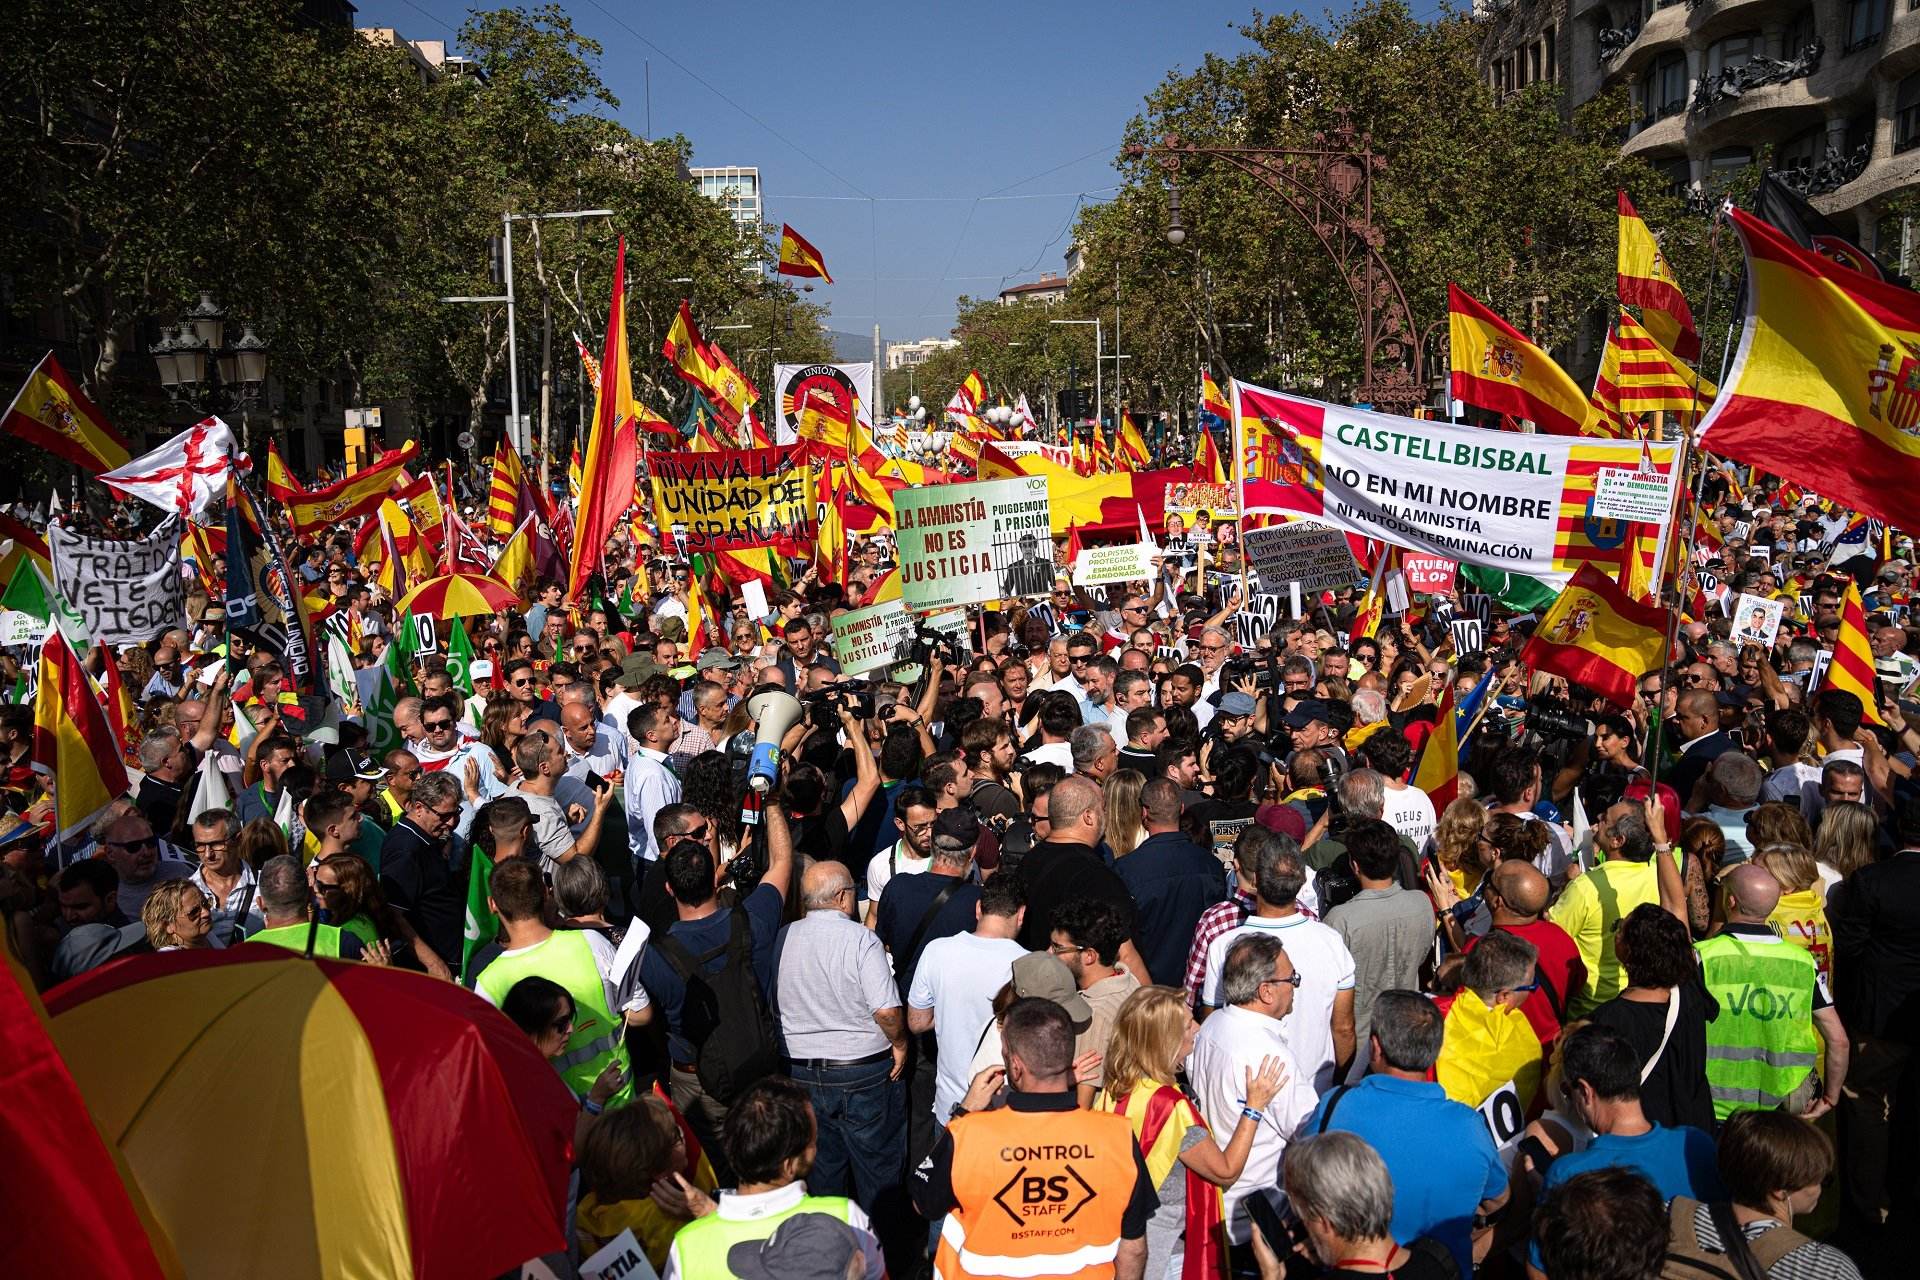 El españolismo se pone a prueba en una nueva manifestación en Barcelona contra la amnistía